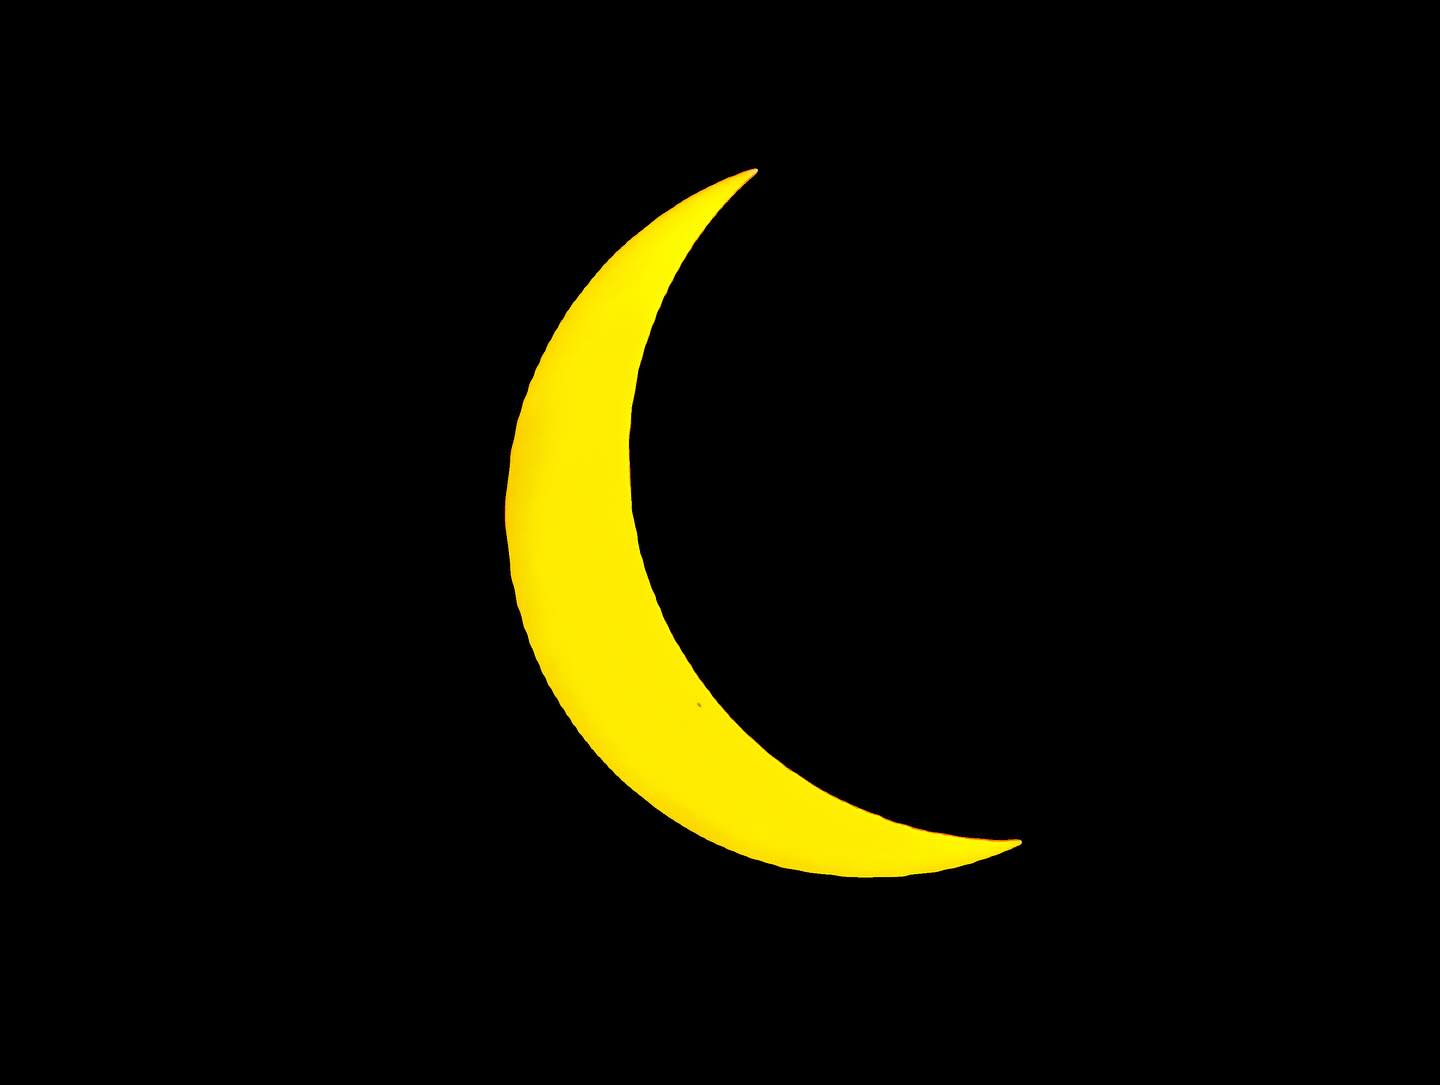 Eclipse parcial, Guadalupe Bogantes